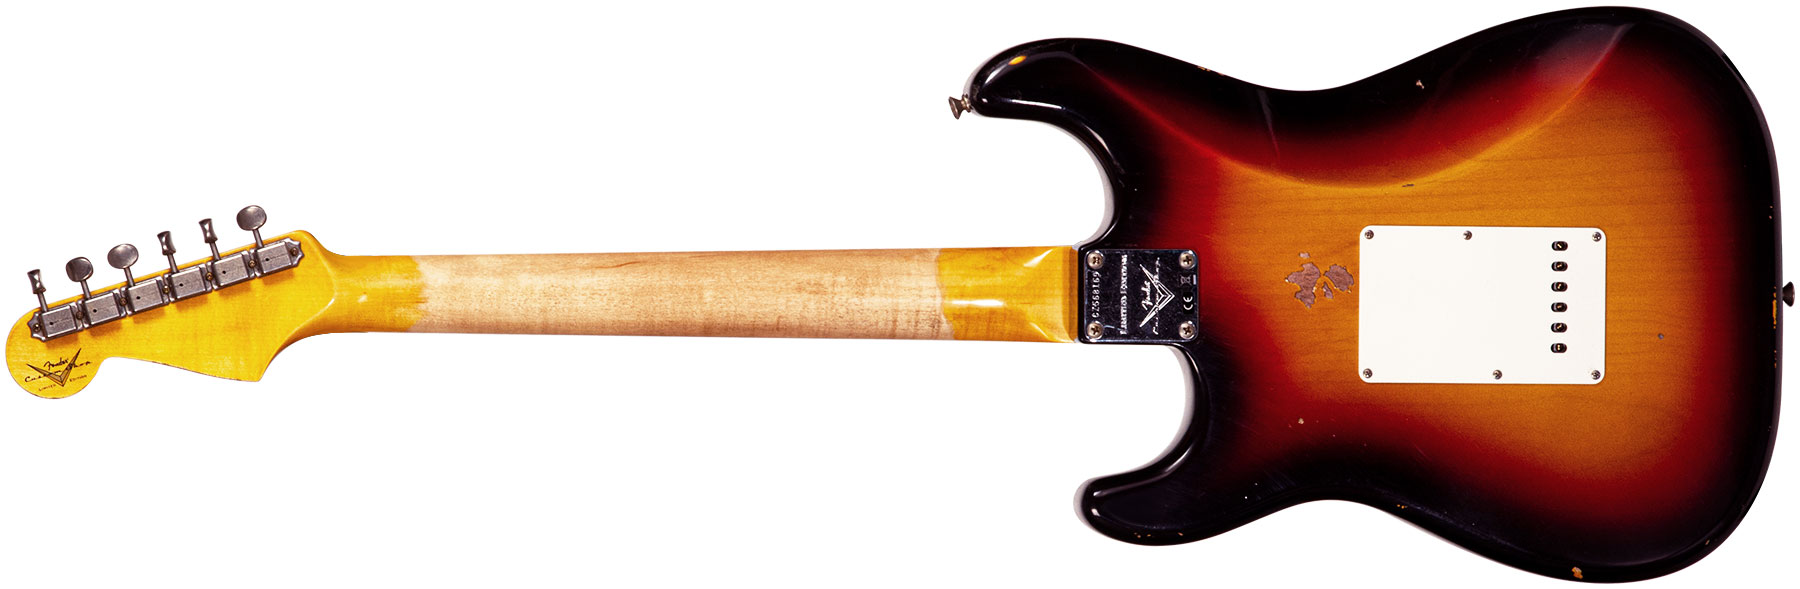 Fender Custom Shop Strat Late 64 3s Trem Rw #cz568169 - Relic Target 3-color Sunburst - Elektrische gitaar in Str-vorm - Variation 1